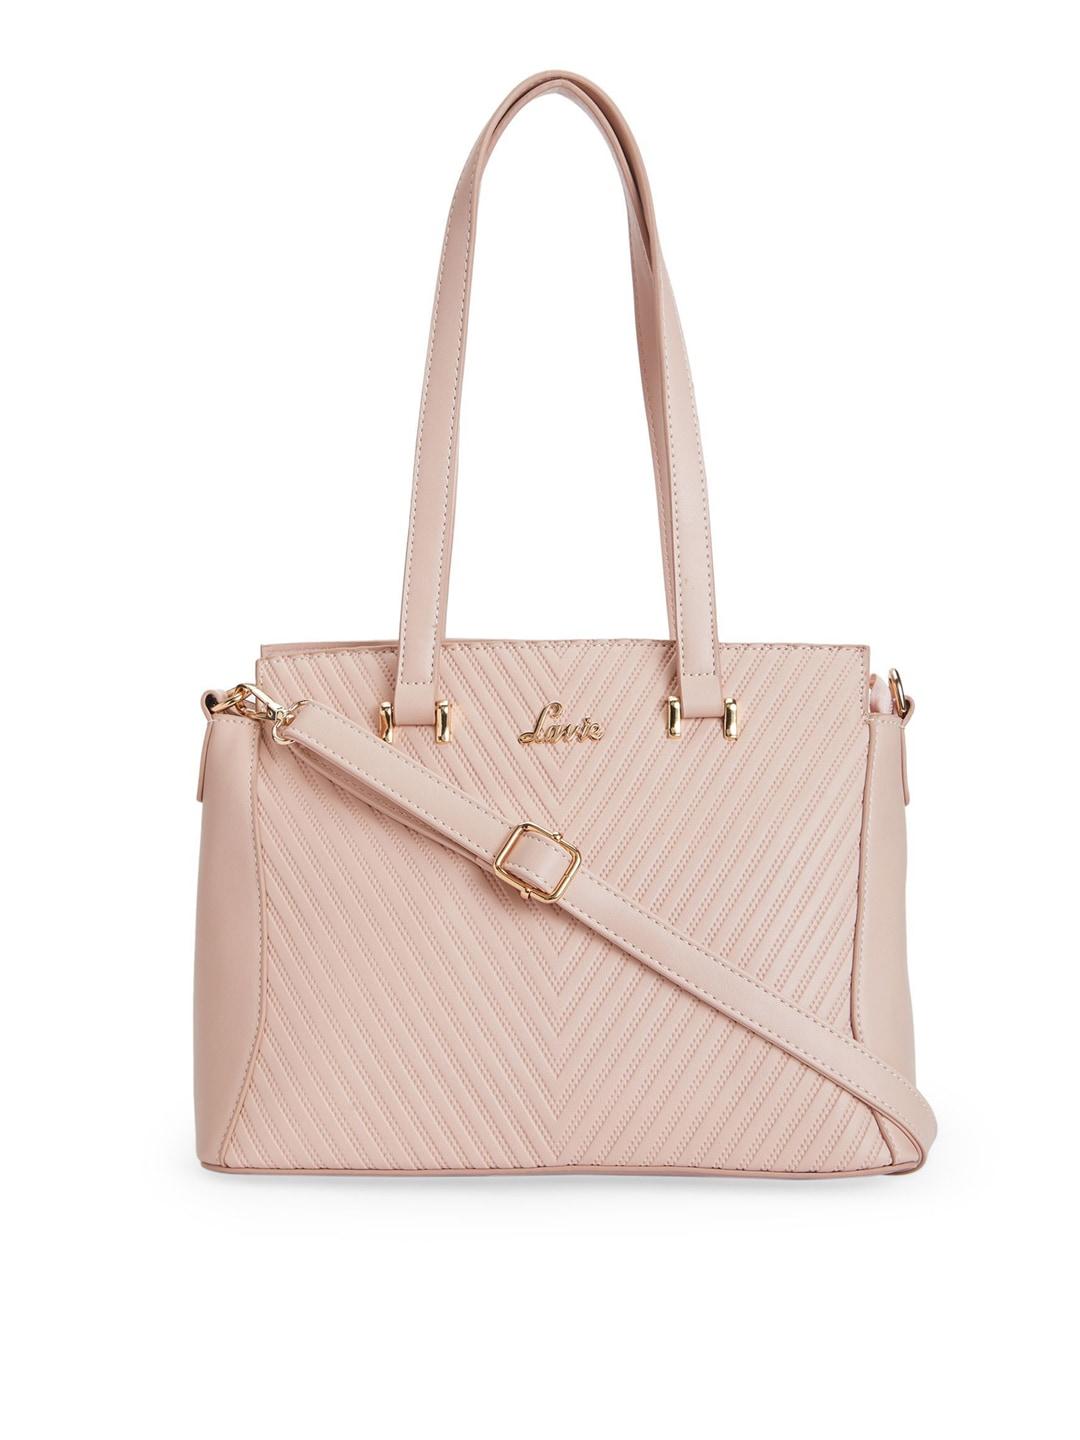 Lavie Pink Textured Shoulder Bag